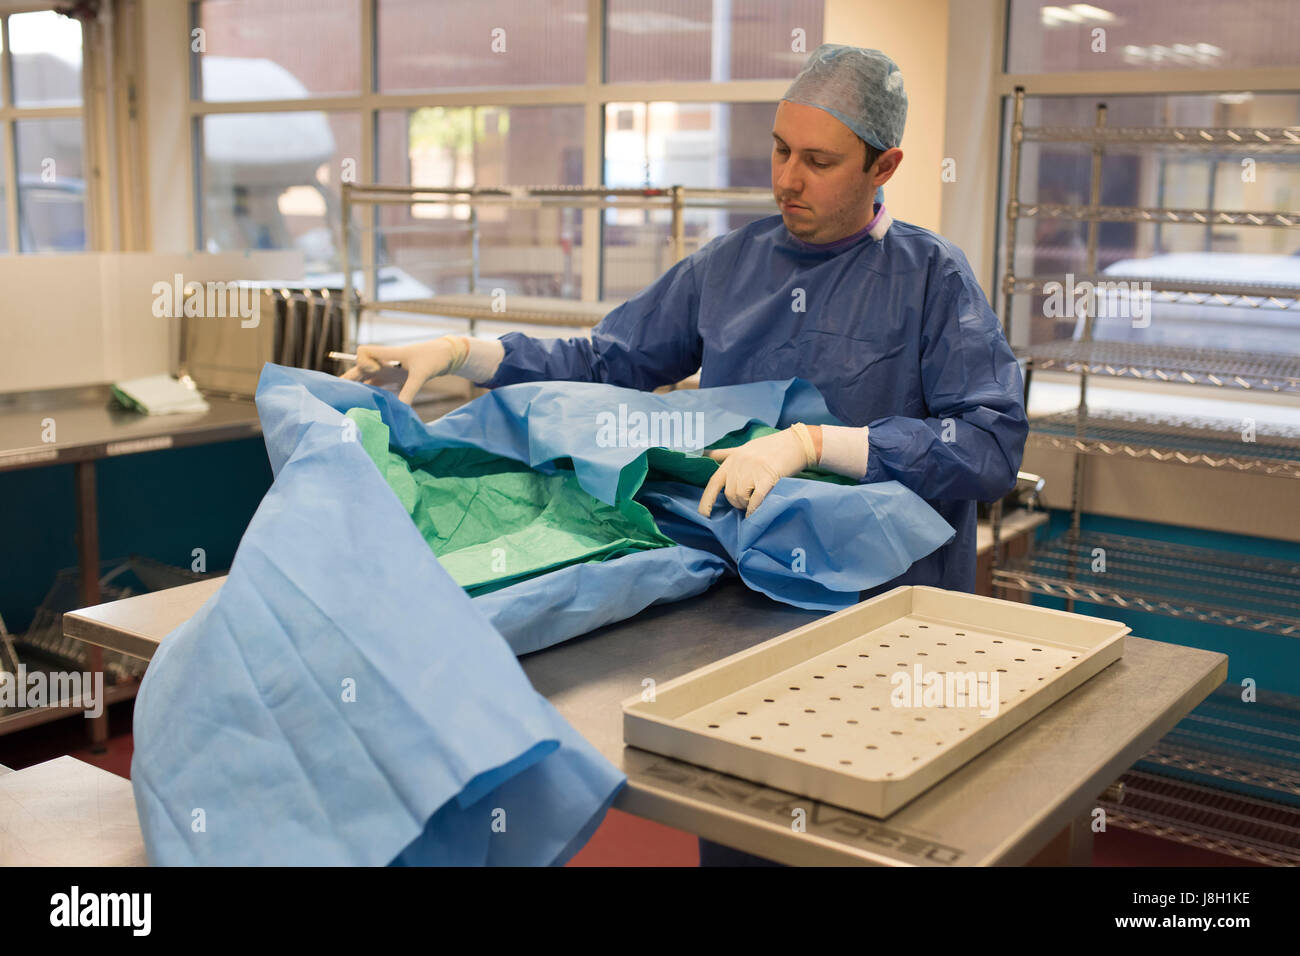 Gli strumenti chirurgici vengono puliti e sterilizzati presso un ospedale da uno strumento chirurgico società sterilizzante Foto Stock